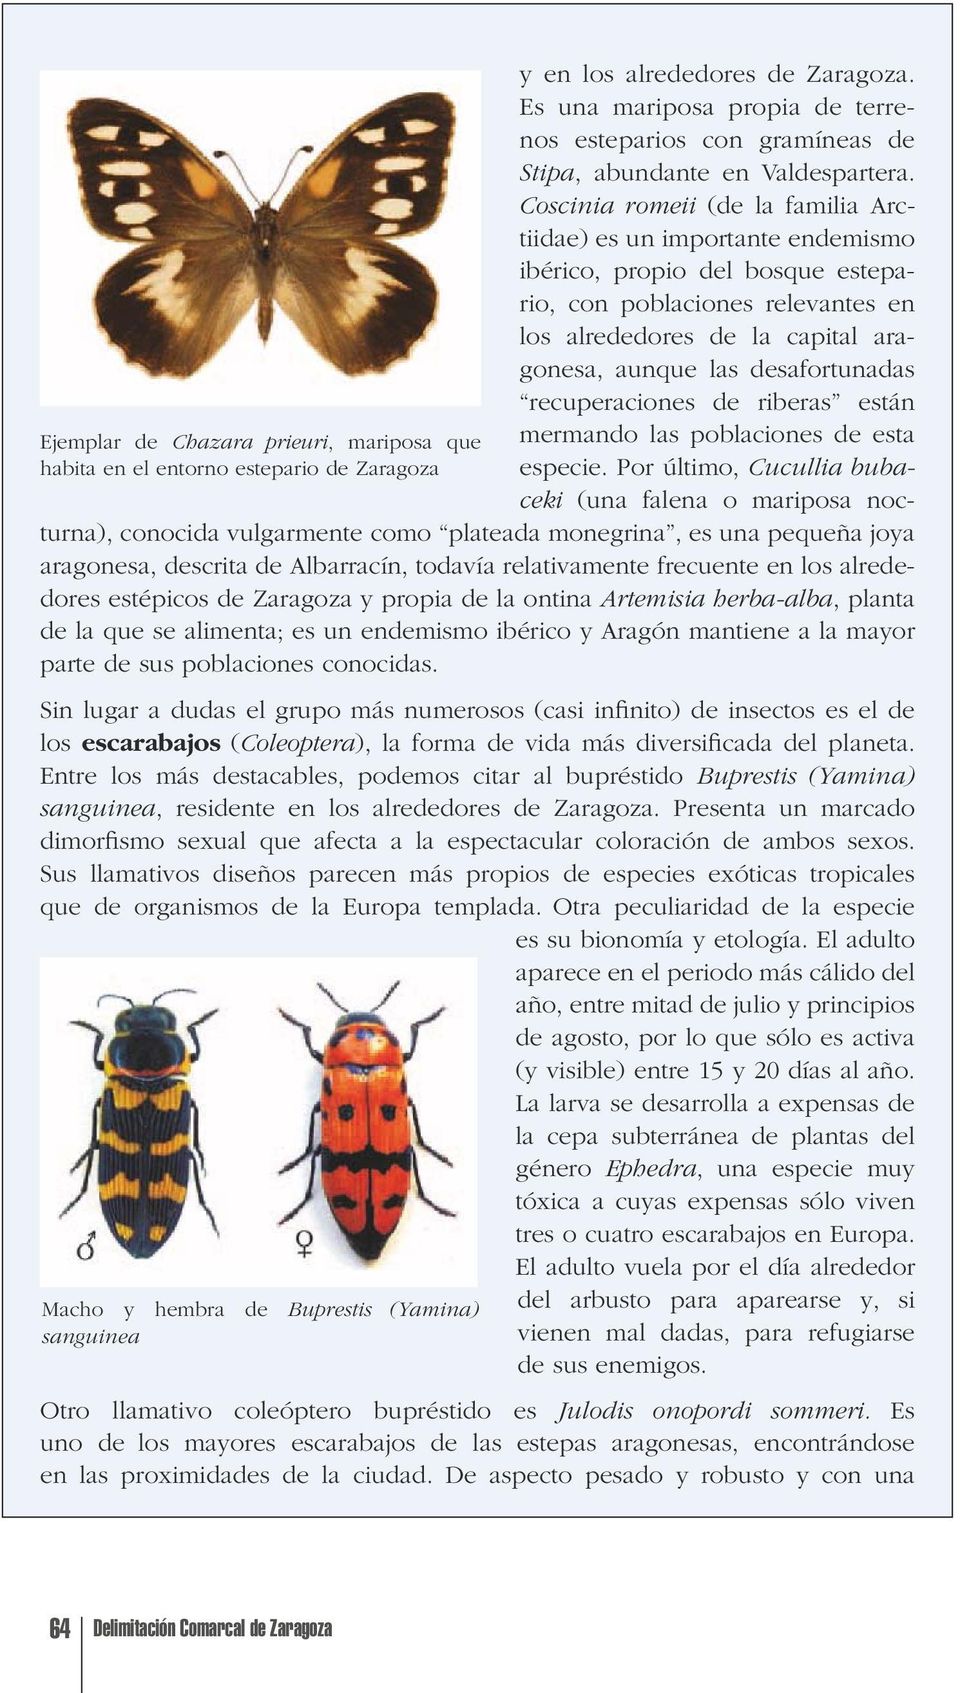 Coscinia romeii (de la familia Arctiidae) es un importante endemismo ibérico, propio del bosque estepario, con poblaciones relevantes en los alrededores de la capital aragonesa, aunque las